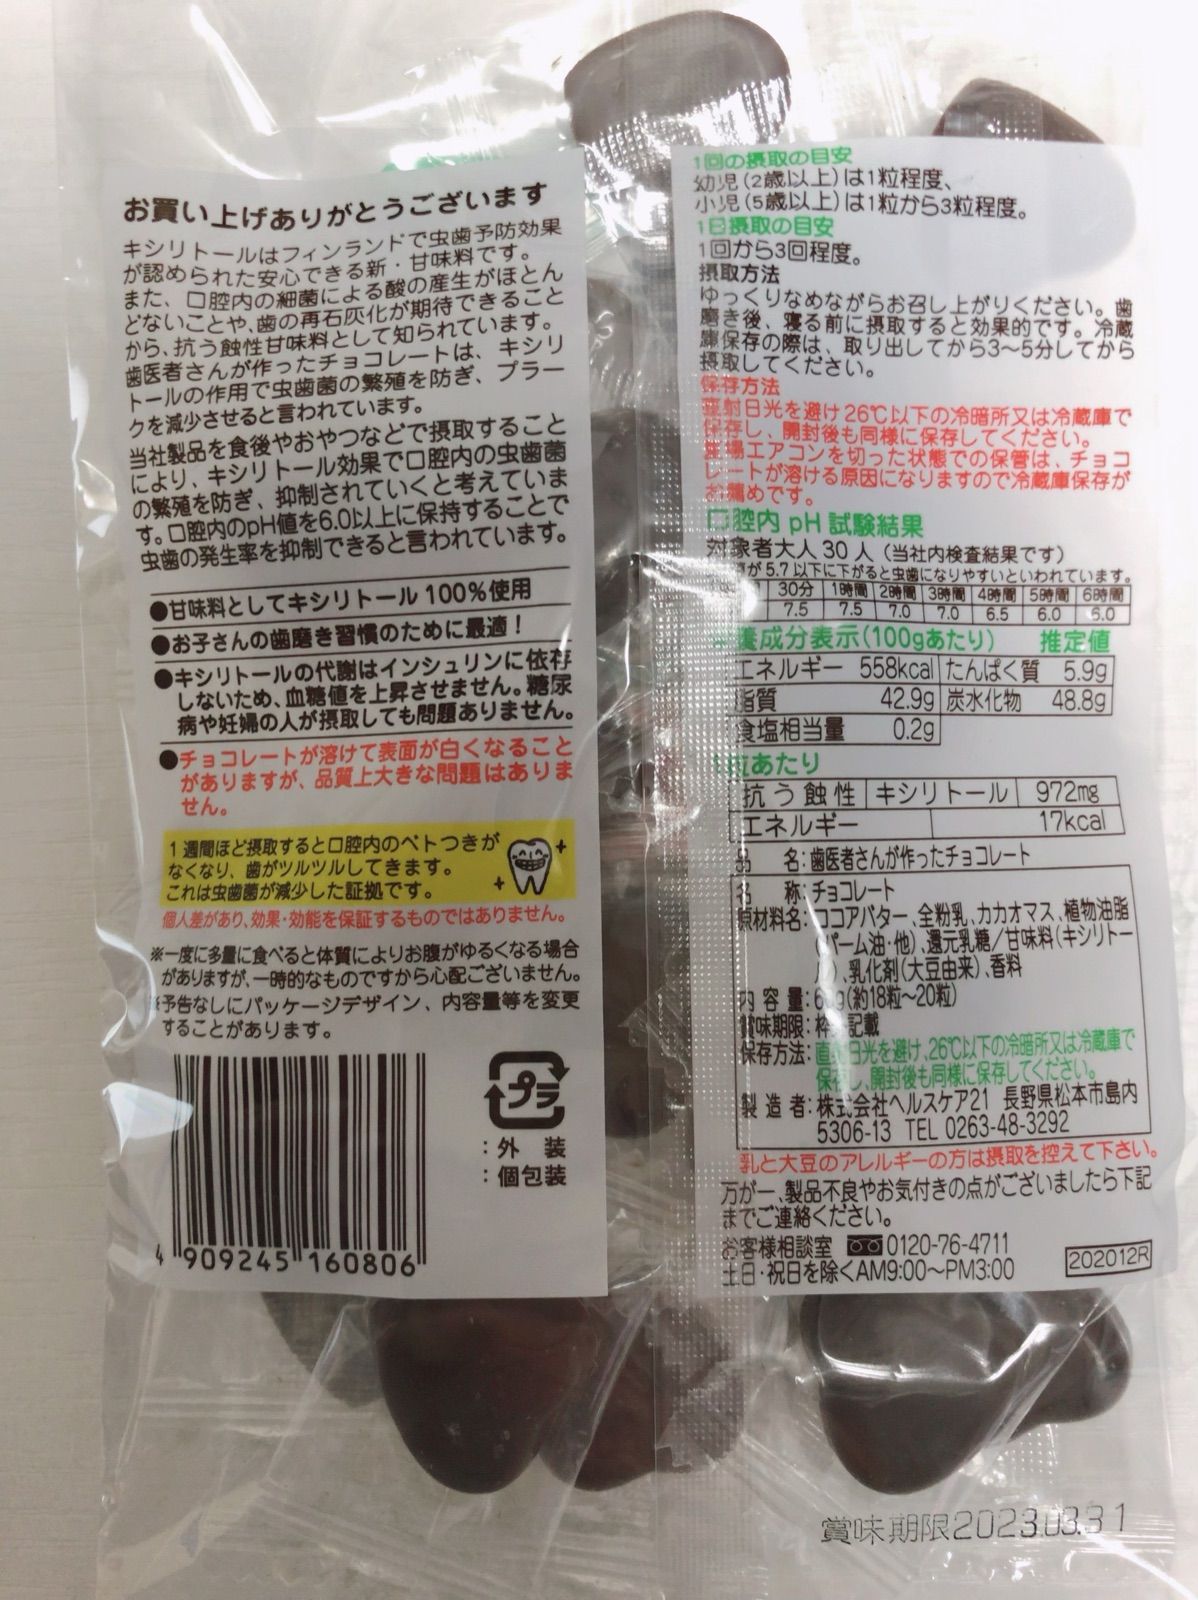 株式会社ヘルスケア21 歯医者さんが作ったチョコレート 袋タイプ 60g